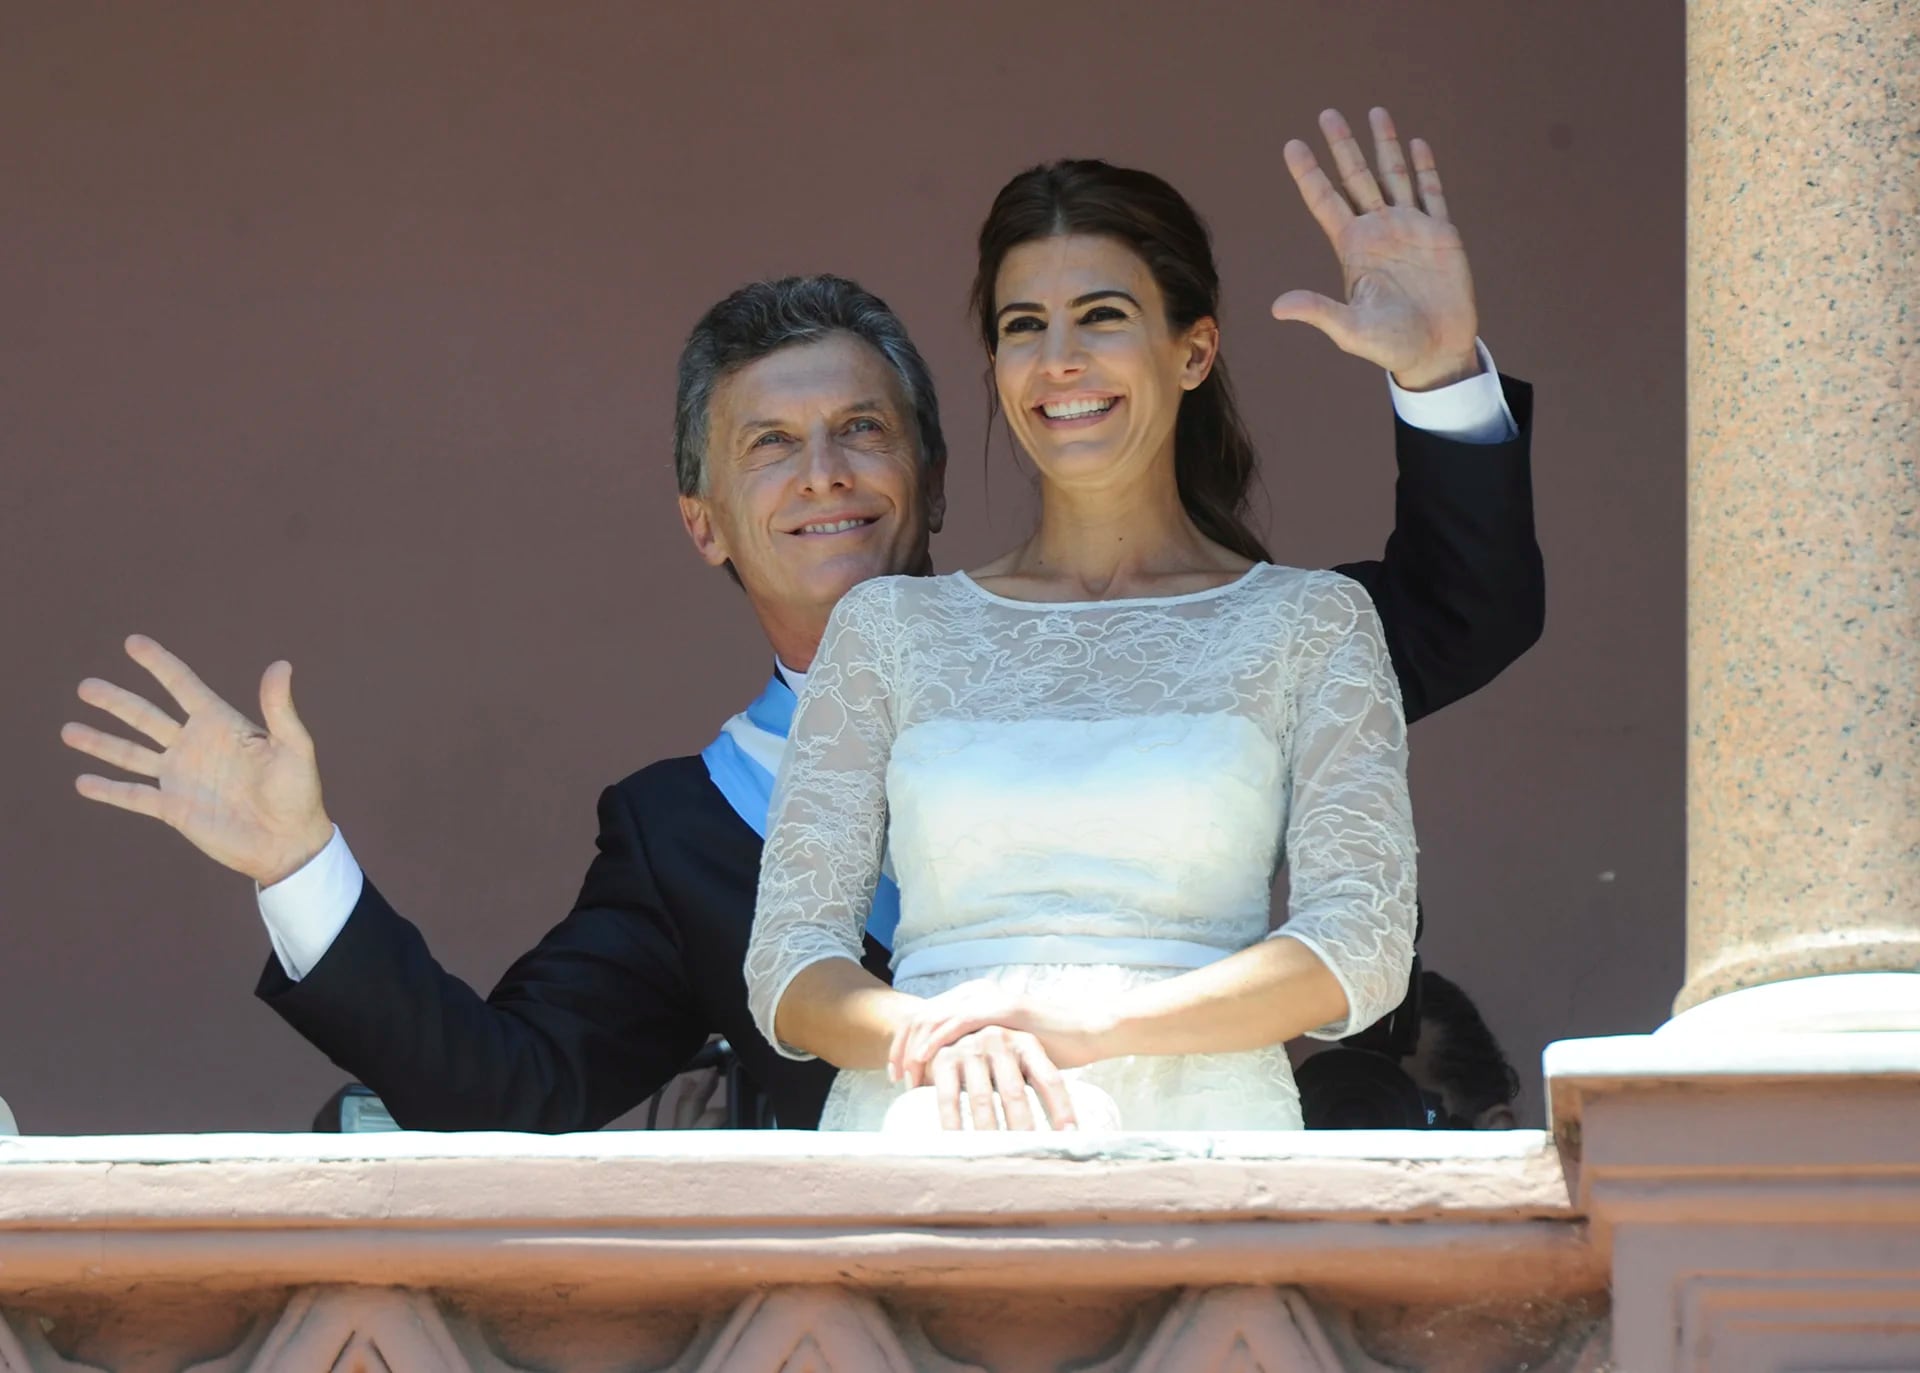 El Presidente Mauricio Macri junto a su esposa, bailando en el balcon de la Casa Rosada, luego de su asunción (Juan Roleri)